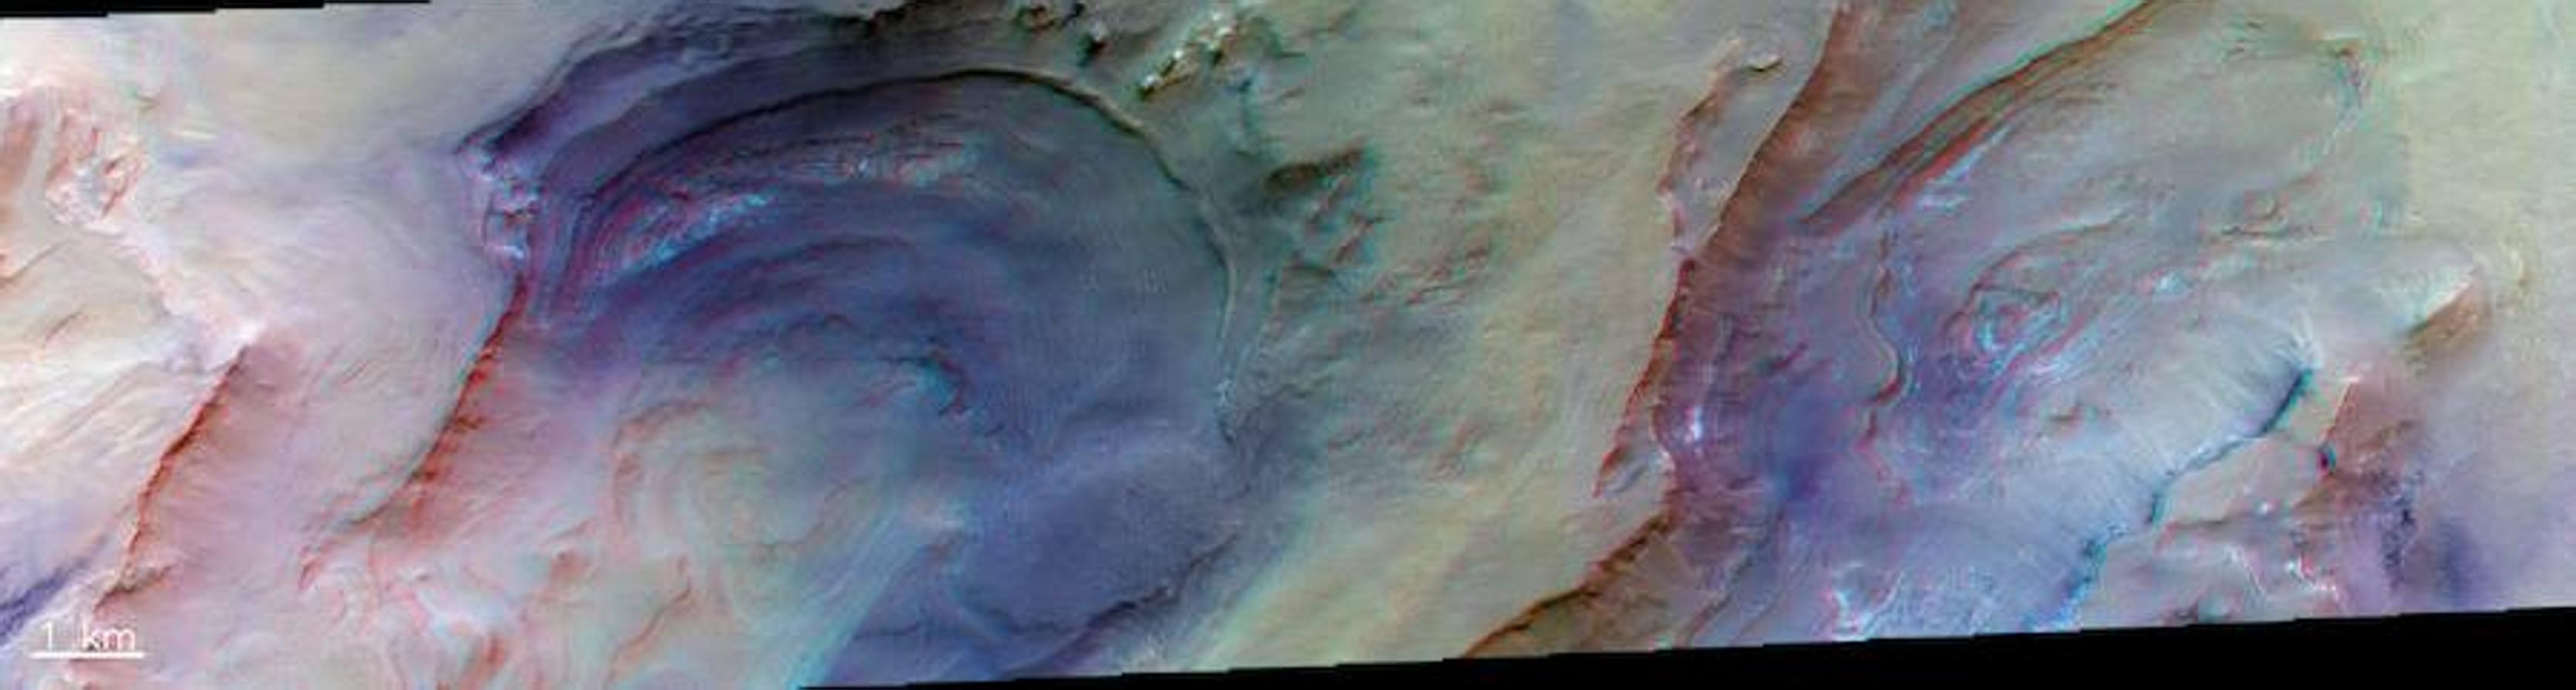 Se pueden usar lentes 3D para disfrutar de esta vista de las depresiones circulares en el hemisferio sur de Marte, exponiendo afloramientos en capas en el borde norte de la gran cuenca Hellas